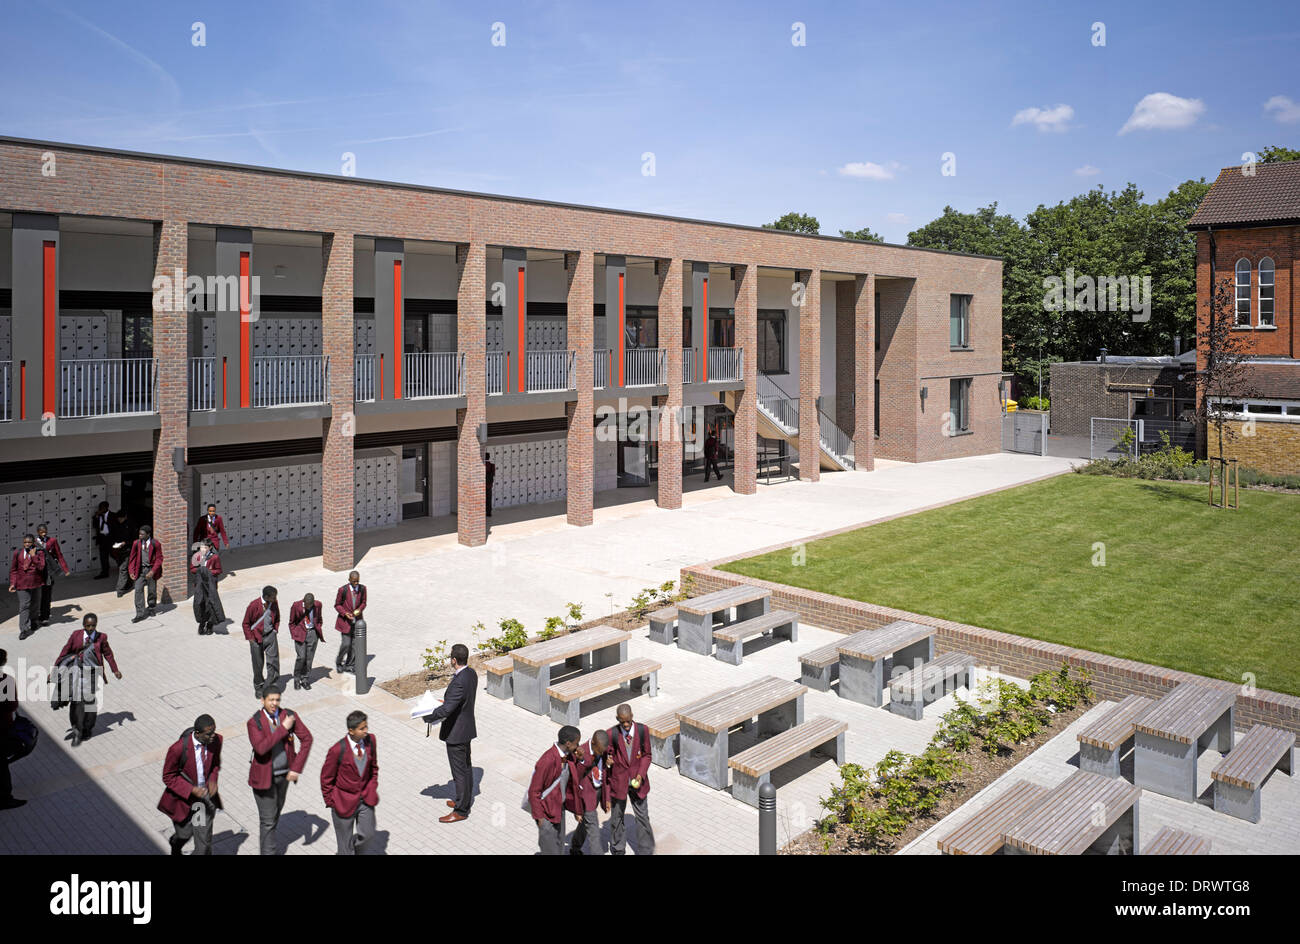 L'Apôtre saint Thomas College, Londres, Royaume-Uni. Architecte : Alliés et Morrison, 2013. Vue d'ensemble de haut niveau. Banque D'Images